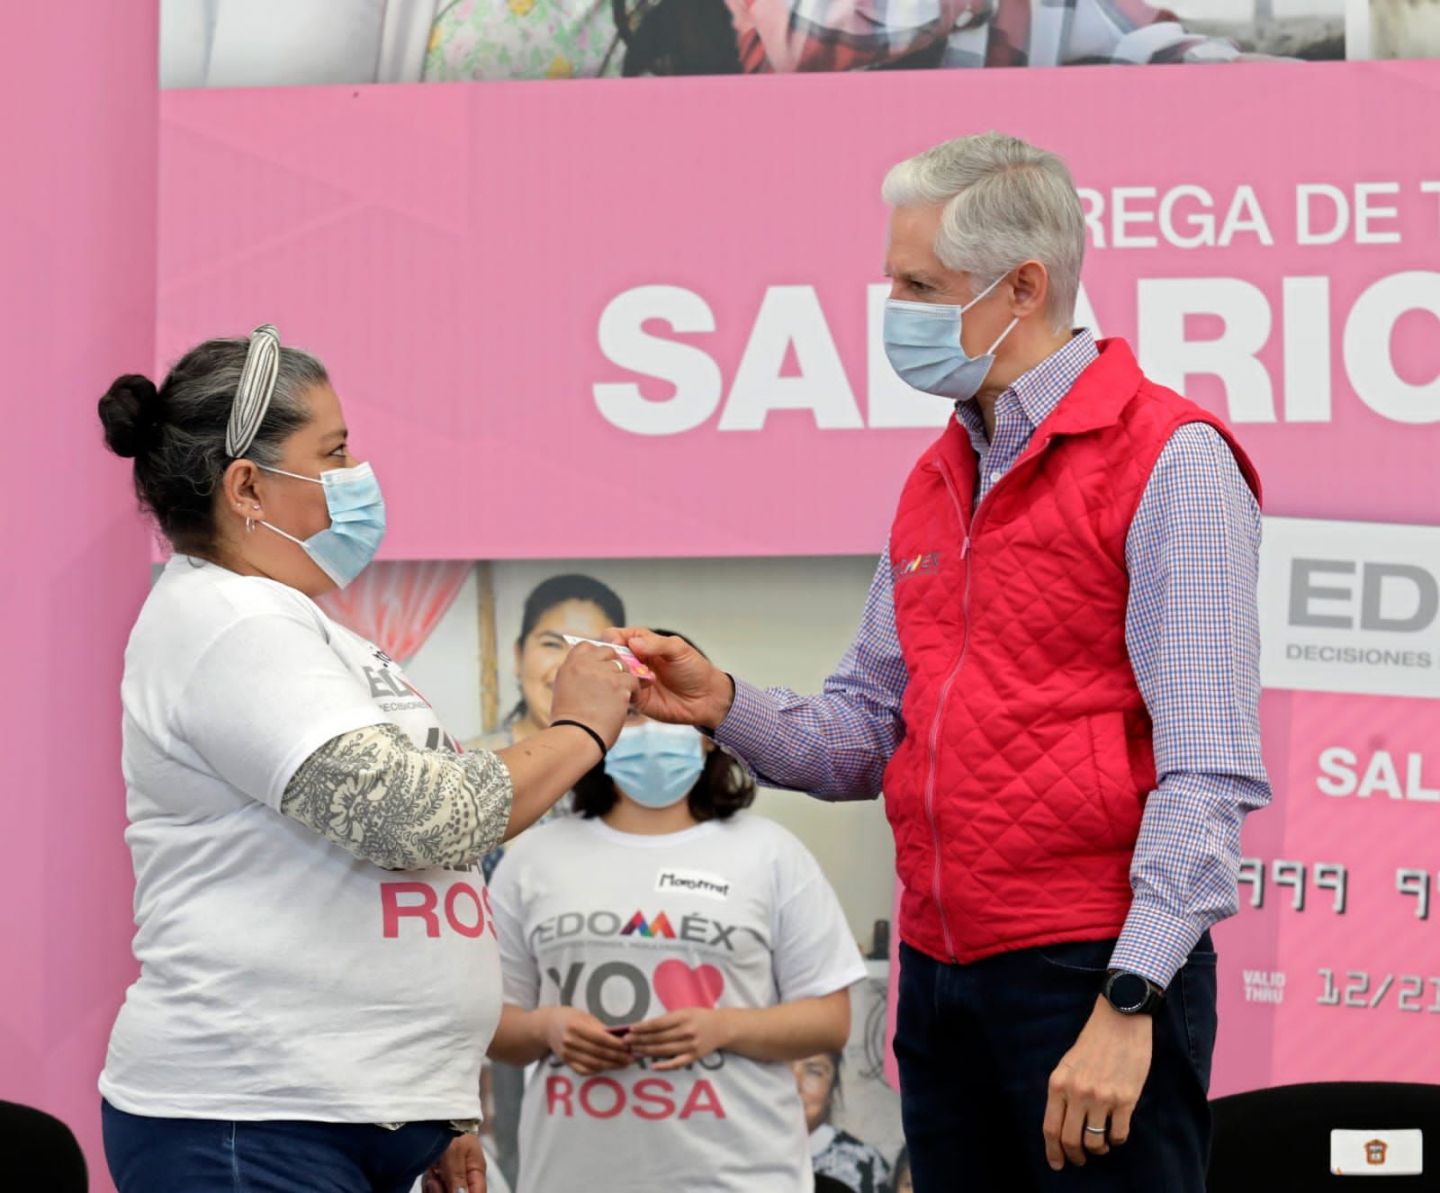 El #Salario rosa es un programa que va #dirigido en apoyo a las mujeres del edomex y a sus #familias: Alfredo del Mazo 